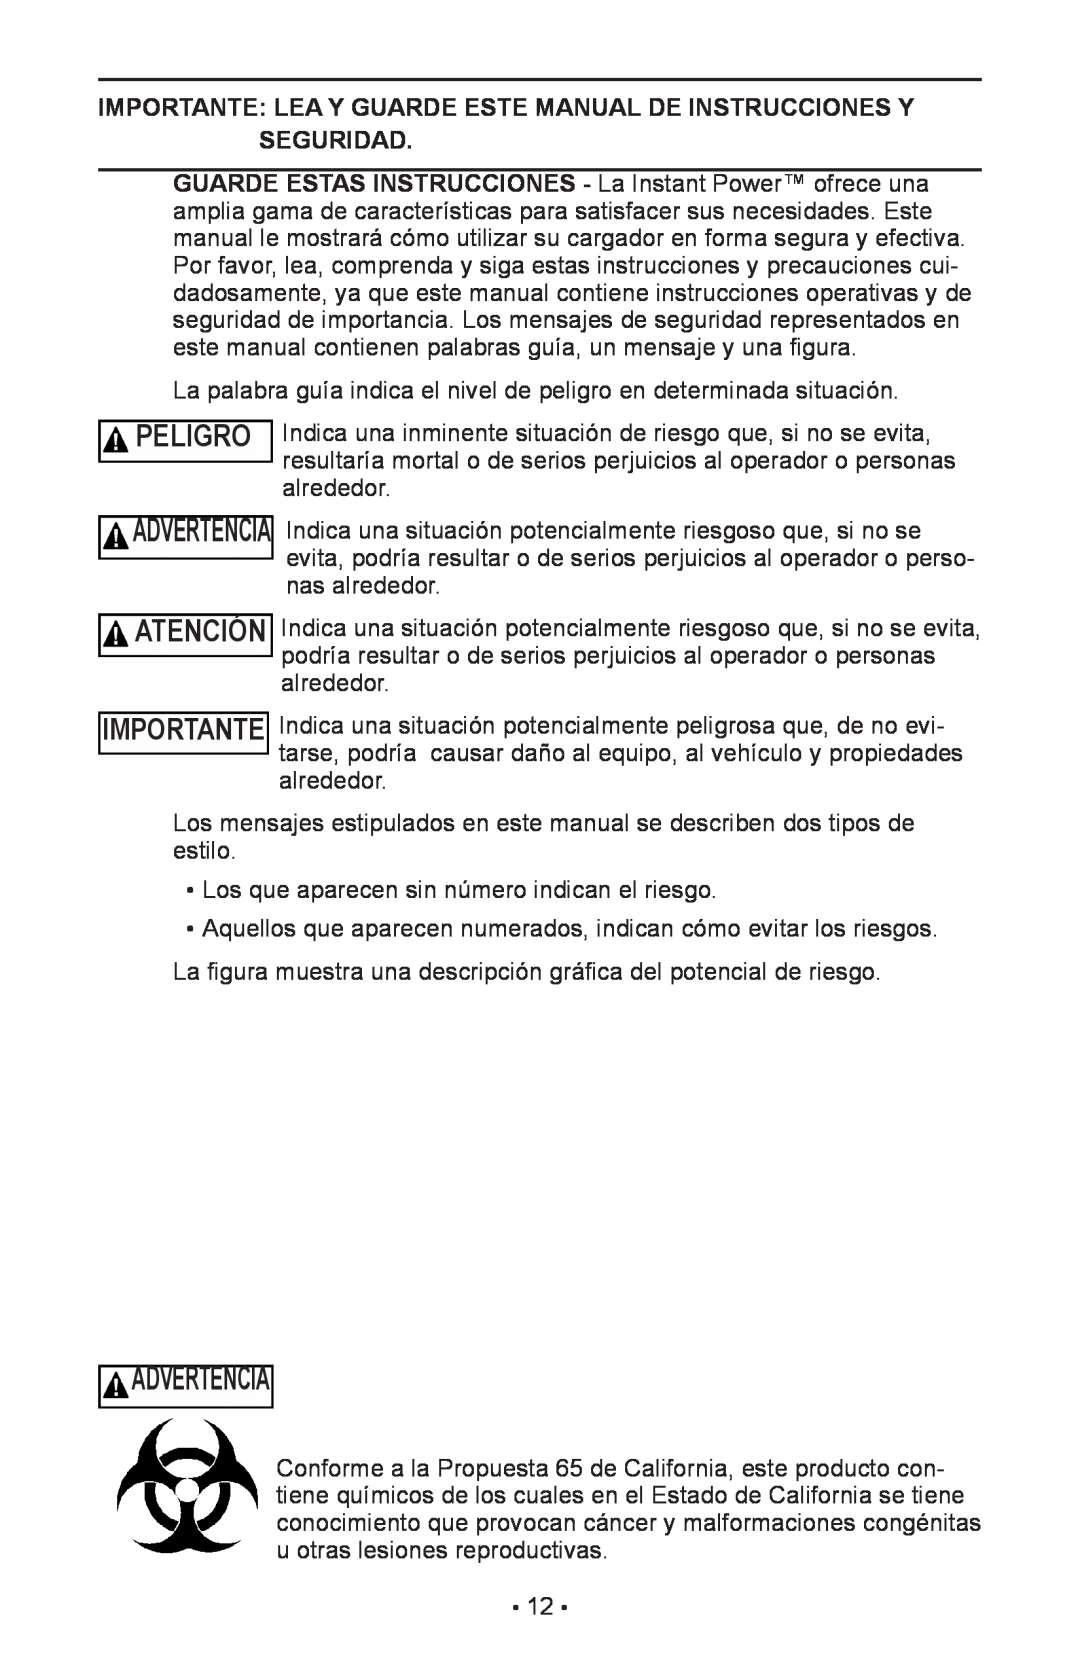 Schumacher IP-1800I, 94026936 Advertencia, Peligro, Importante Lea Y Guarde Este Manual De Instrucciones Y Seguridad 